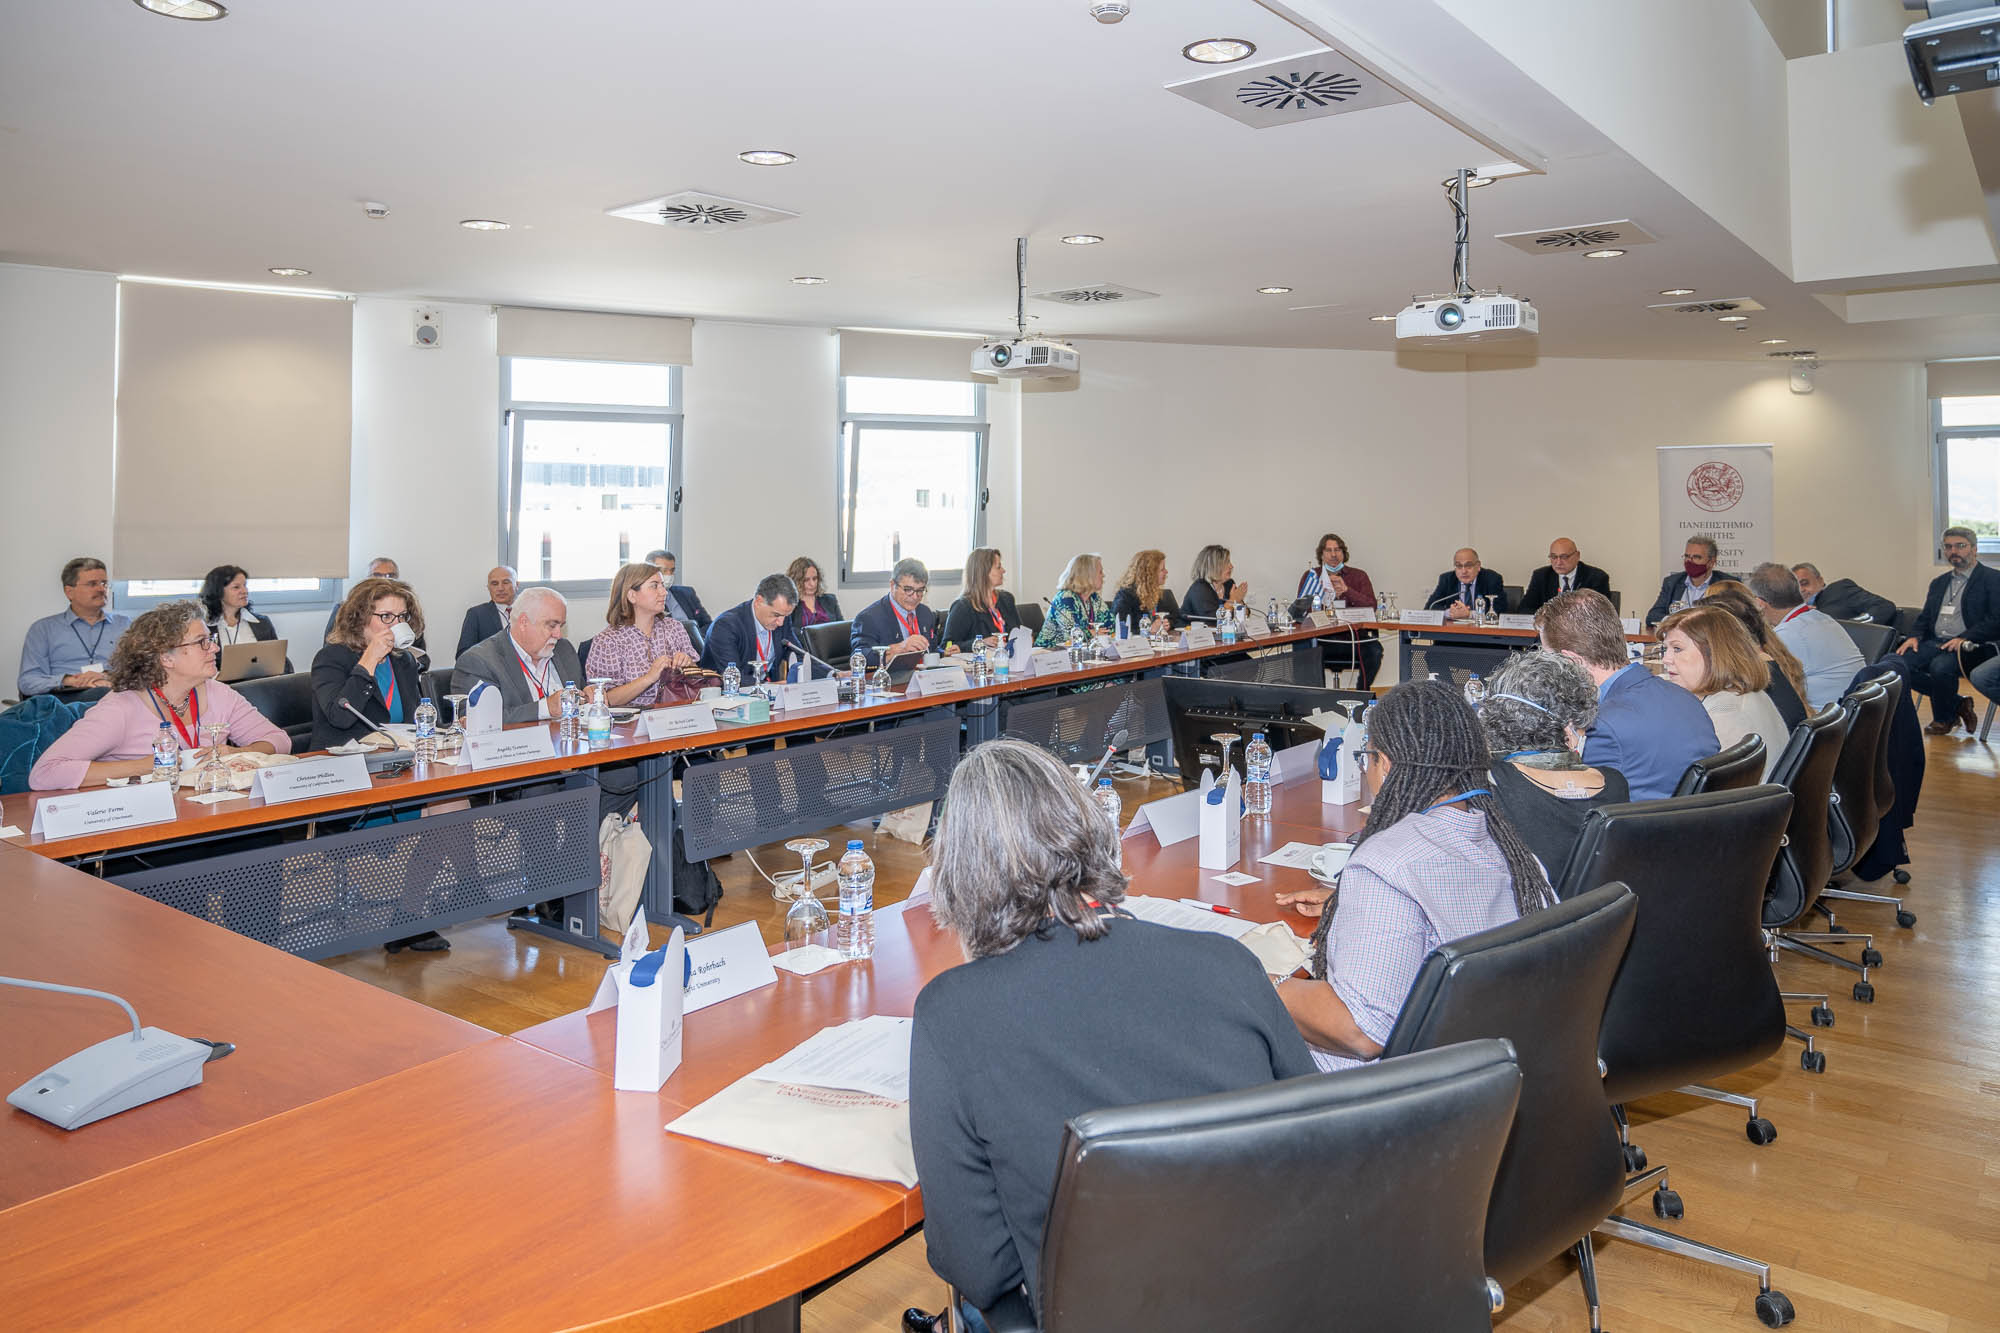 Επίσκεψη κορυφαίων Αμερικανικών Πανεπιστημίων στο Πανεπιστήμιο Κρήτης